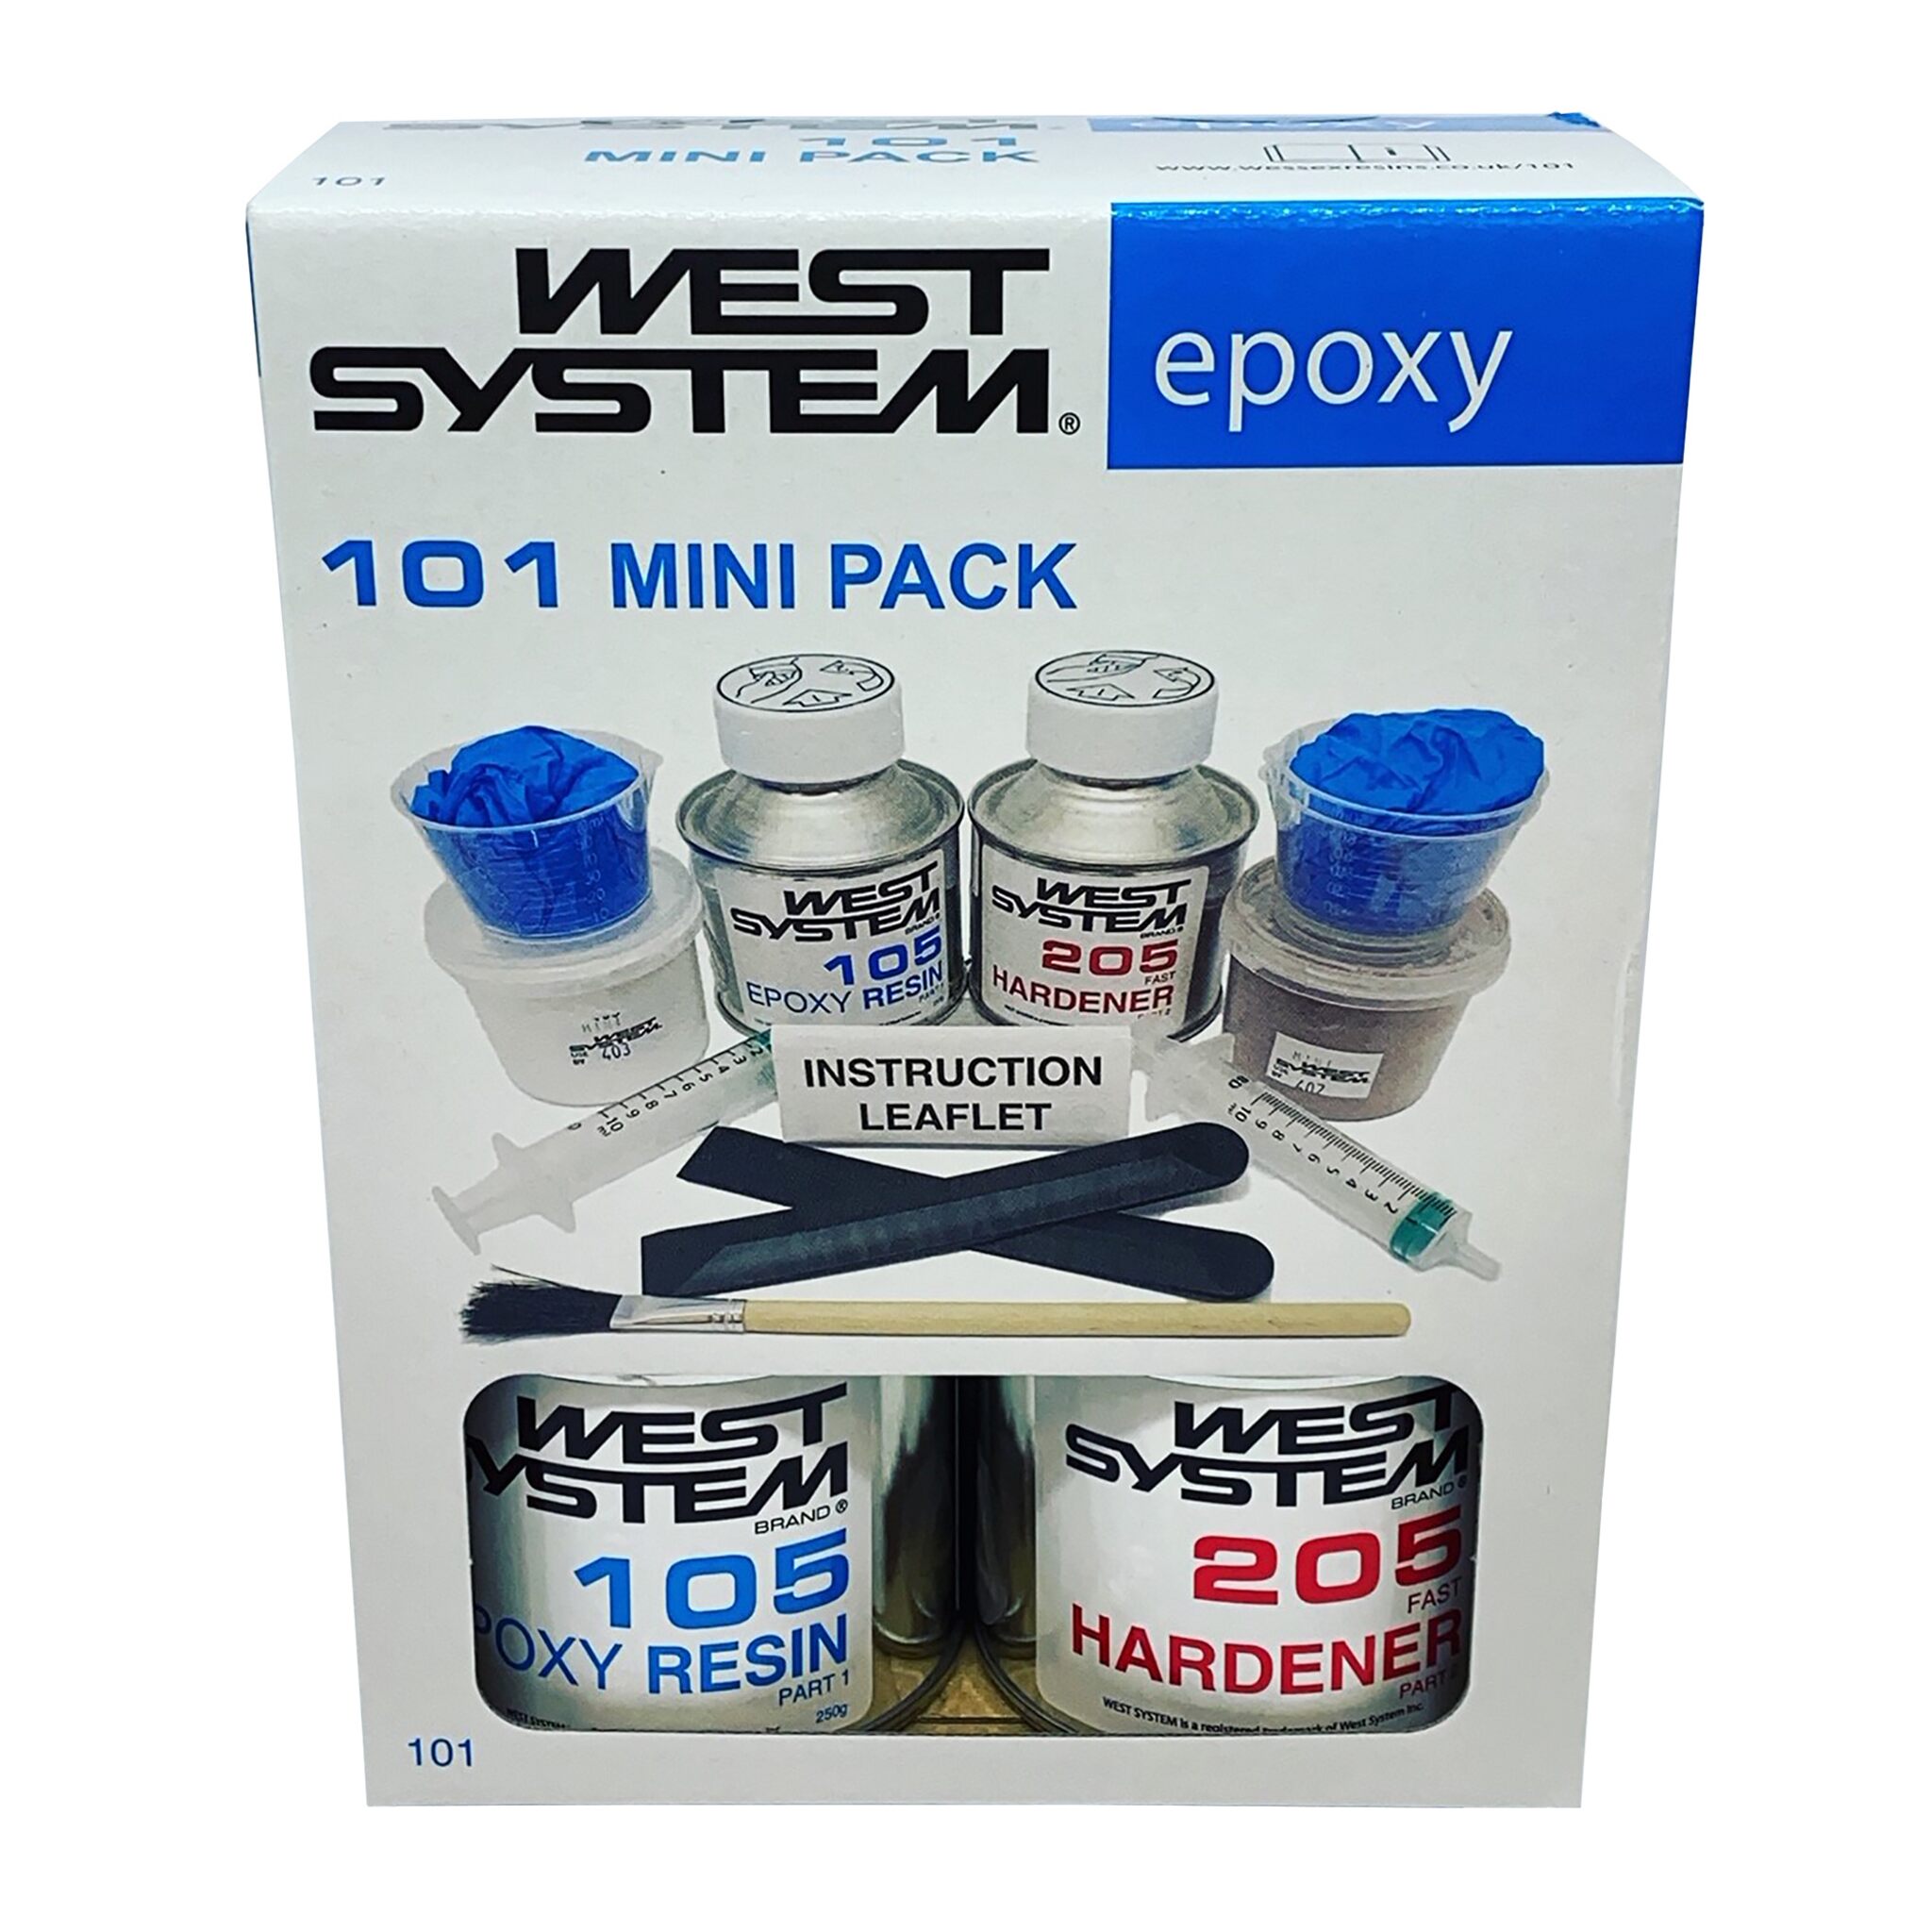 West System Repair Kit \Mobile Phone"